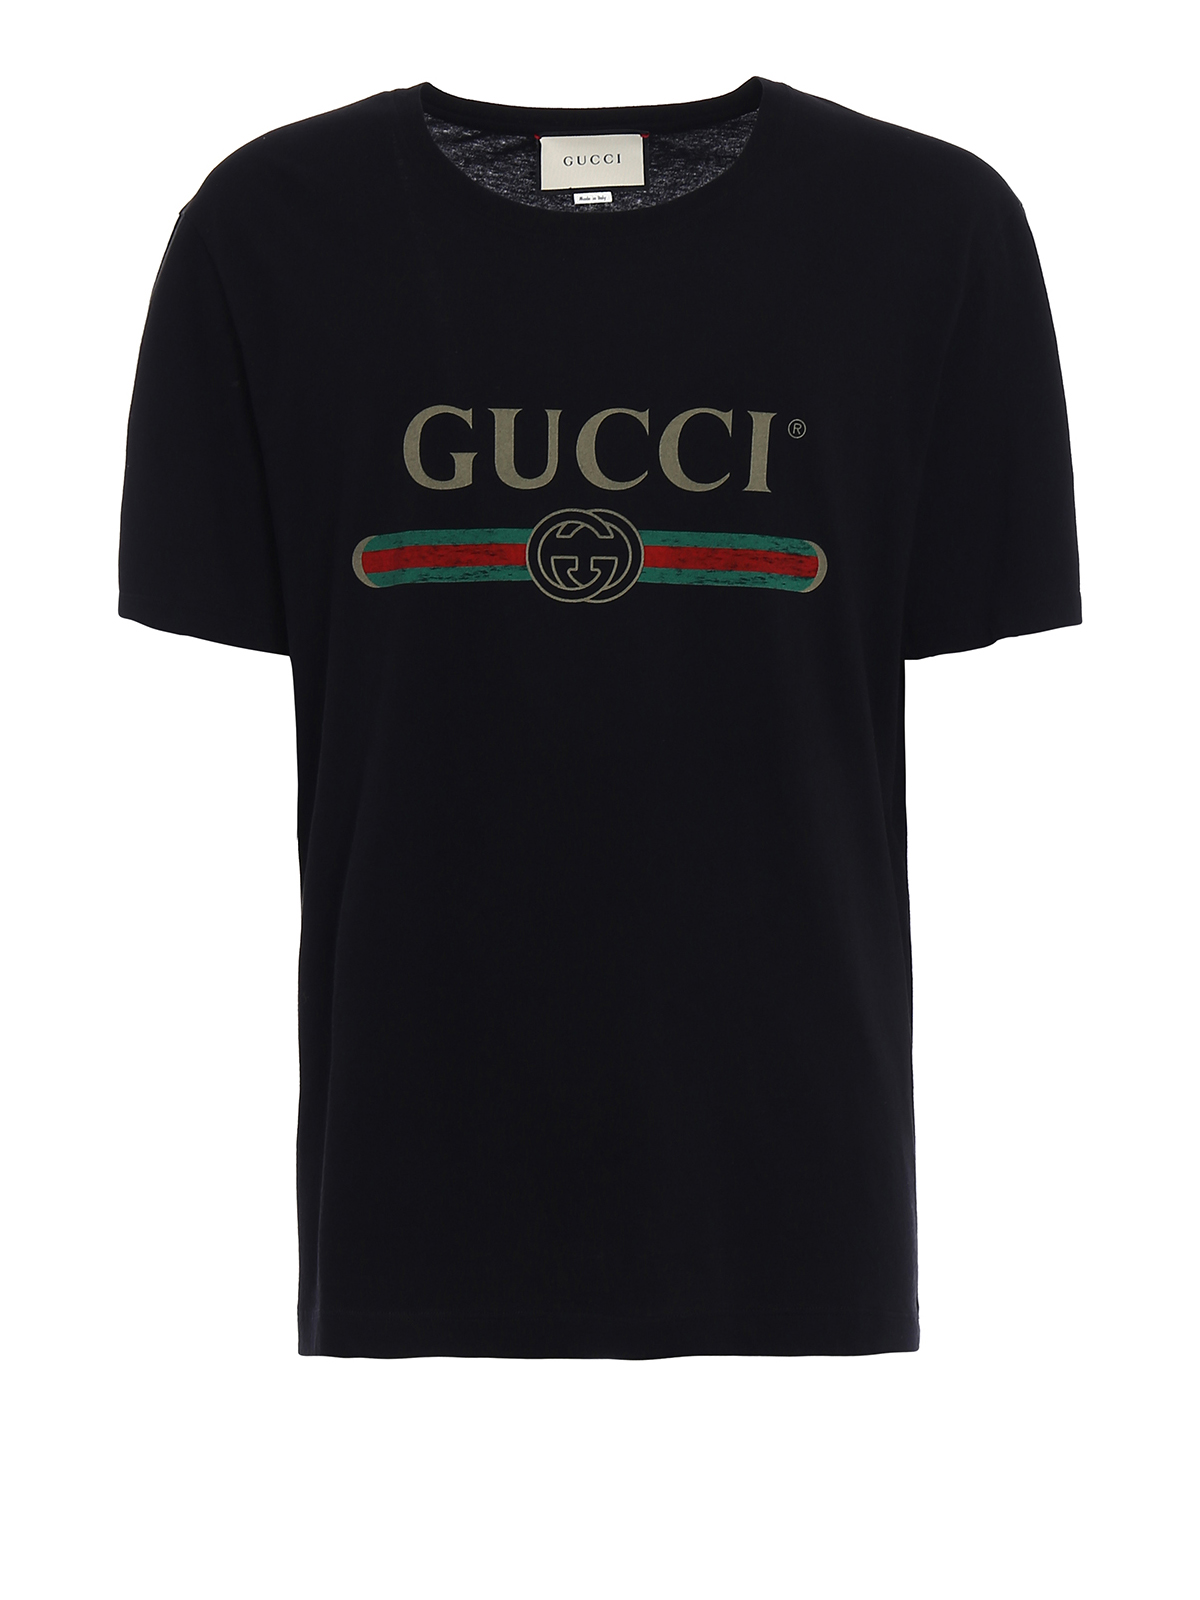 gucci signature t shirt